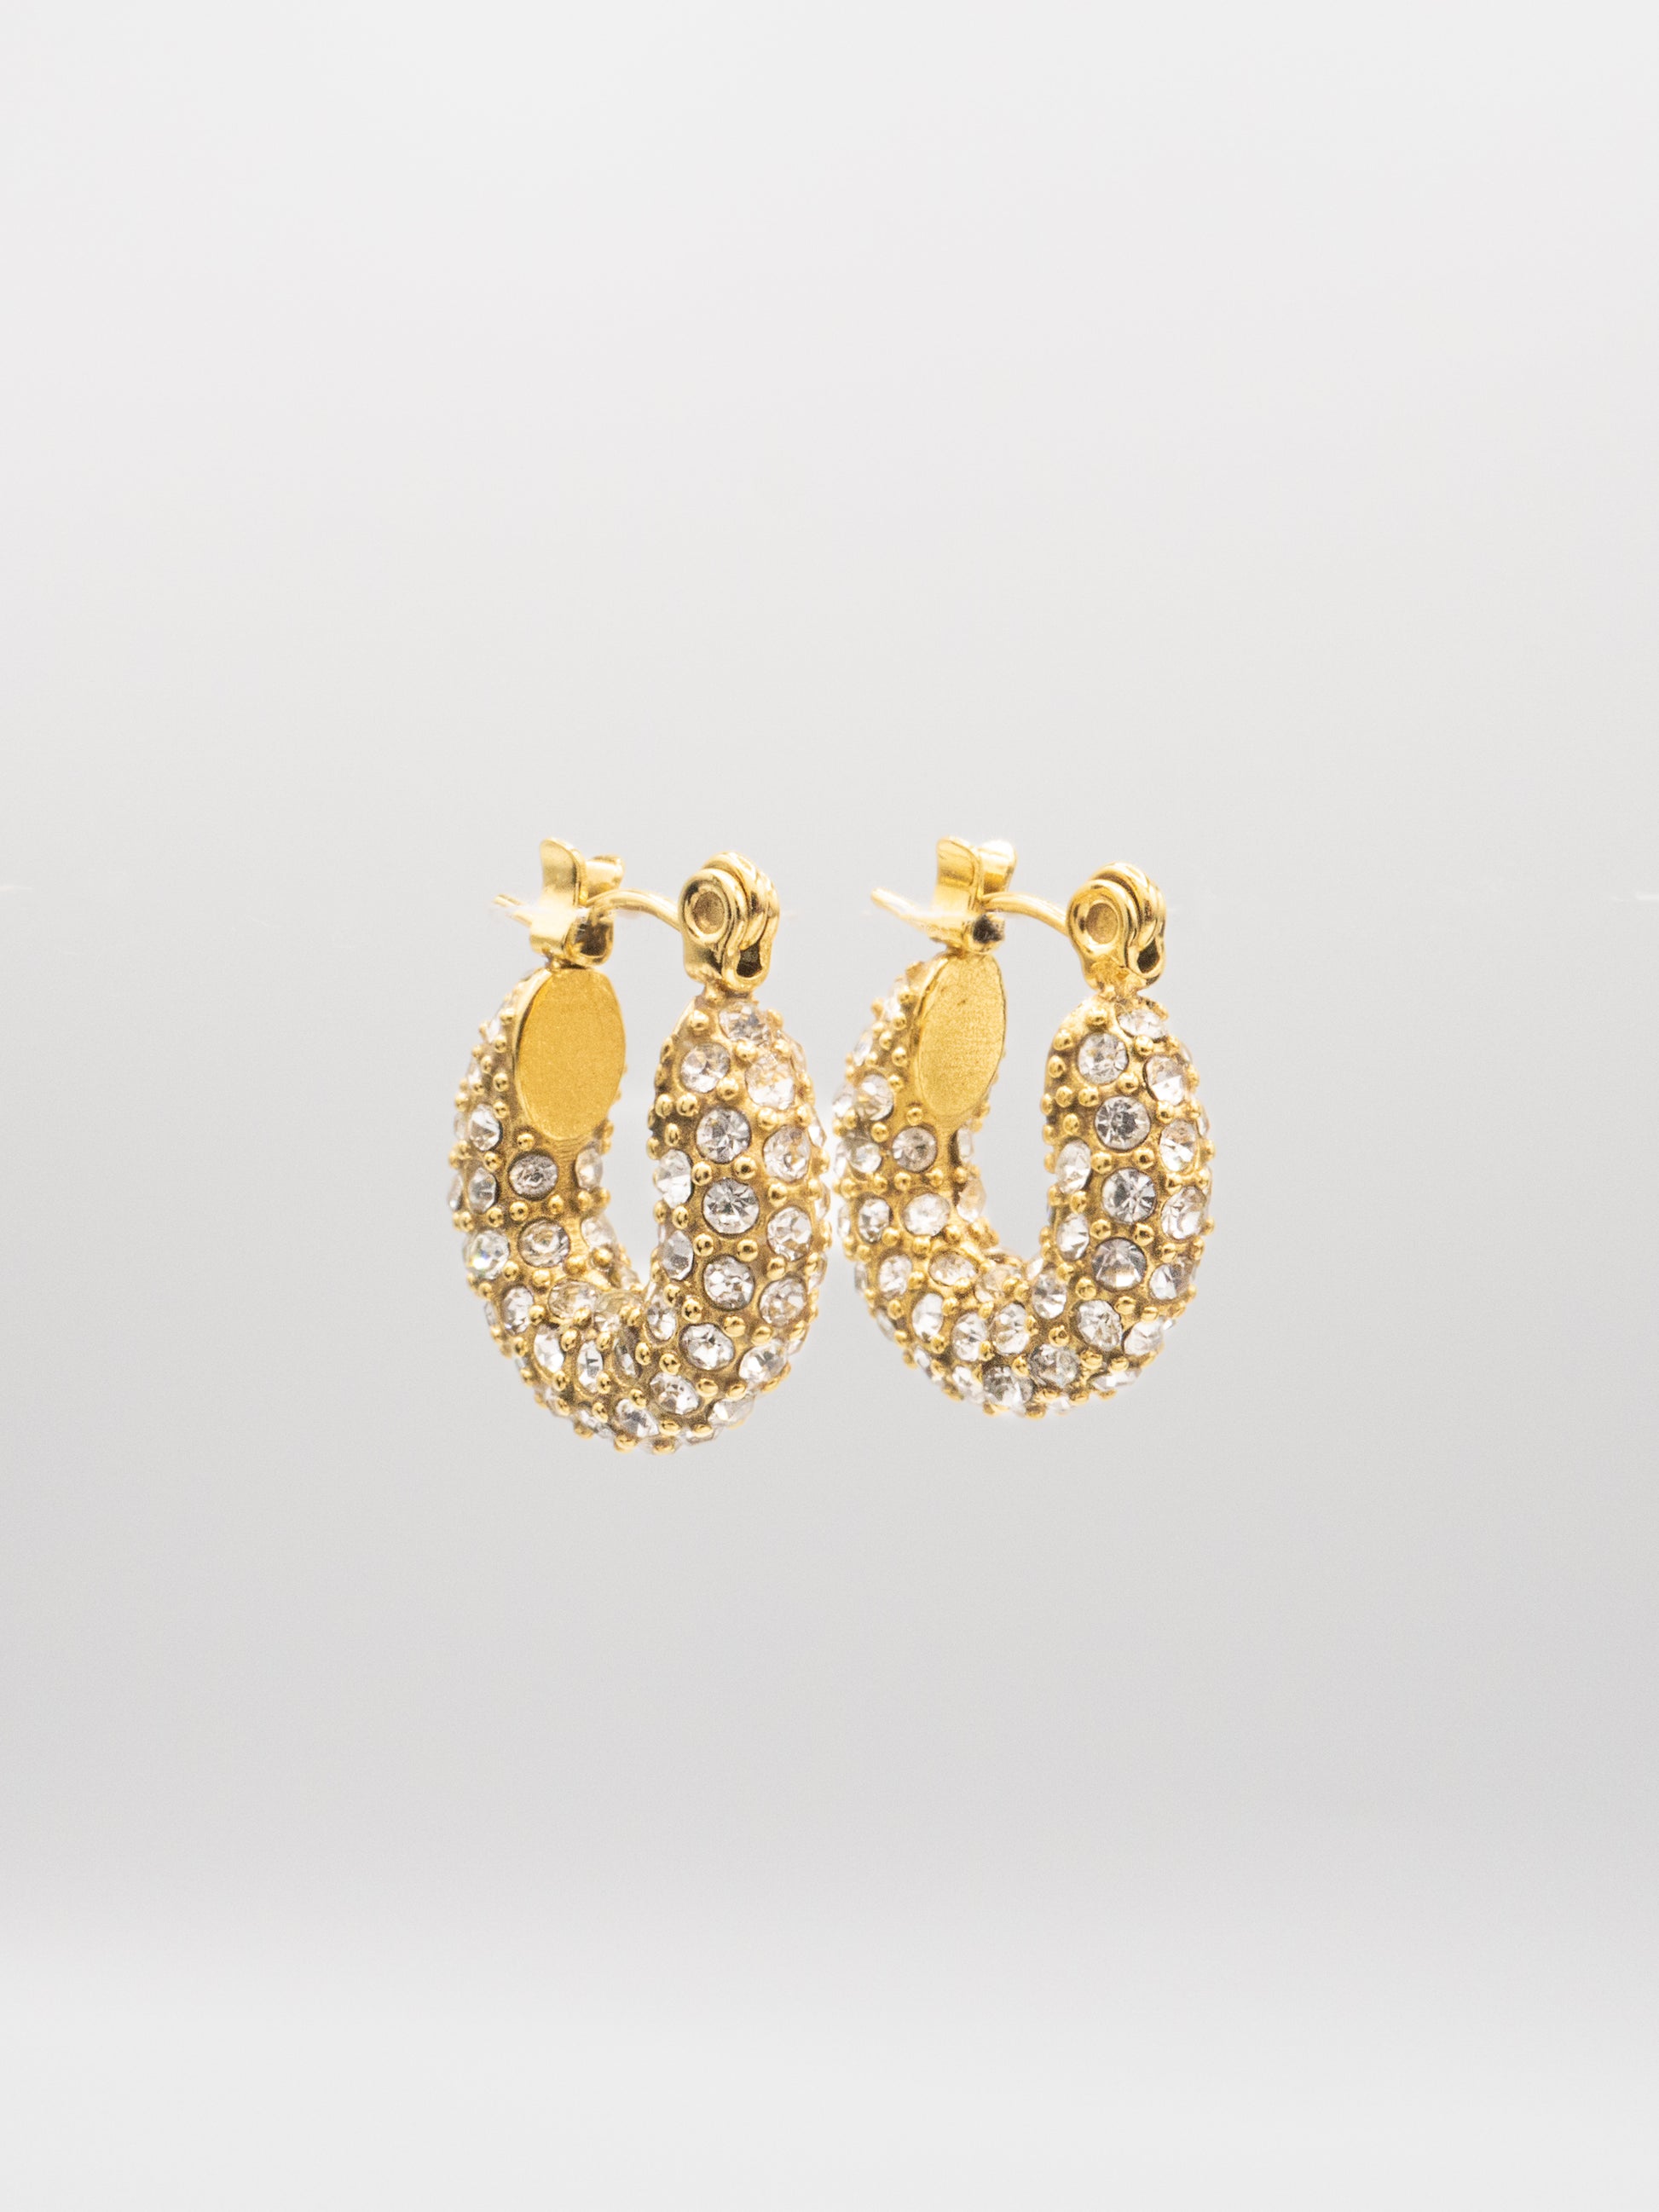 ZIA DAINTY HOOPS | 18K Gold - LILÈ - Earring - LILÈ - online jewellery store - jewelry online - affordable jewellery online Australia